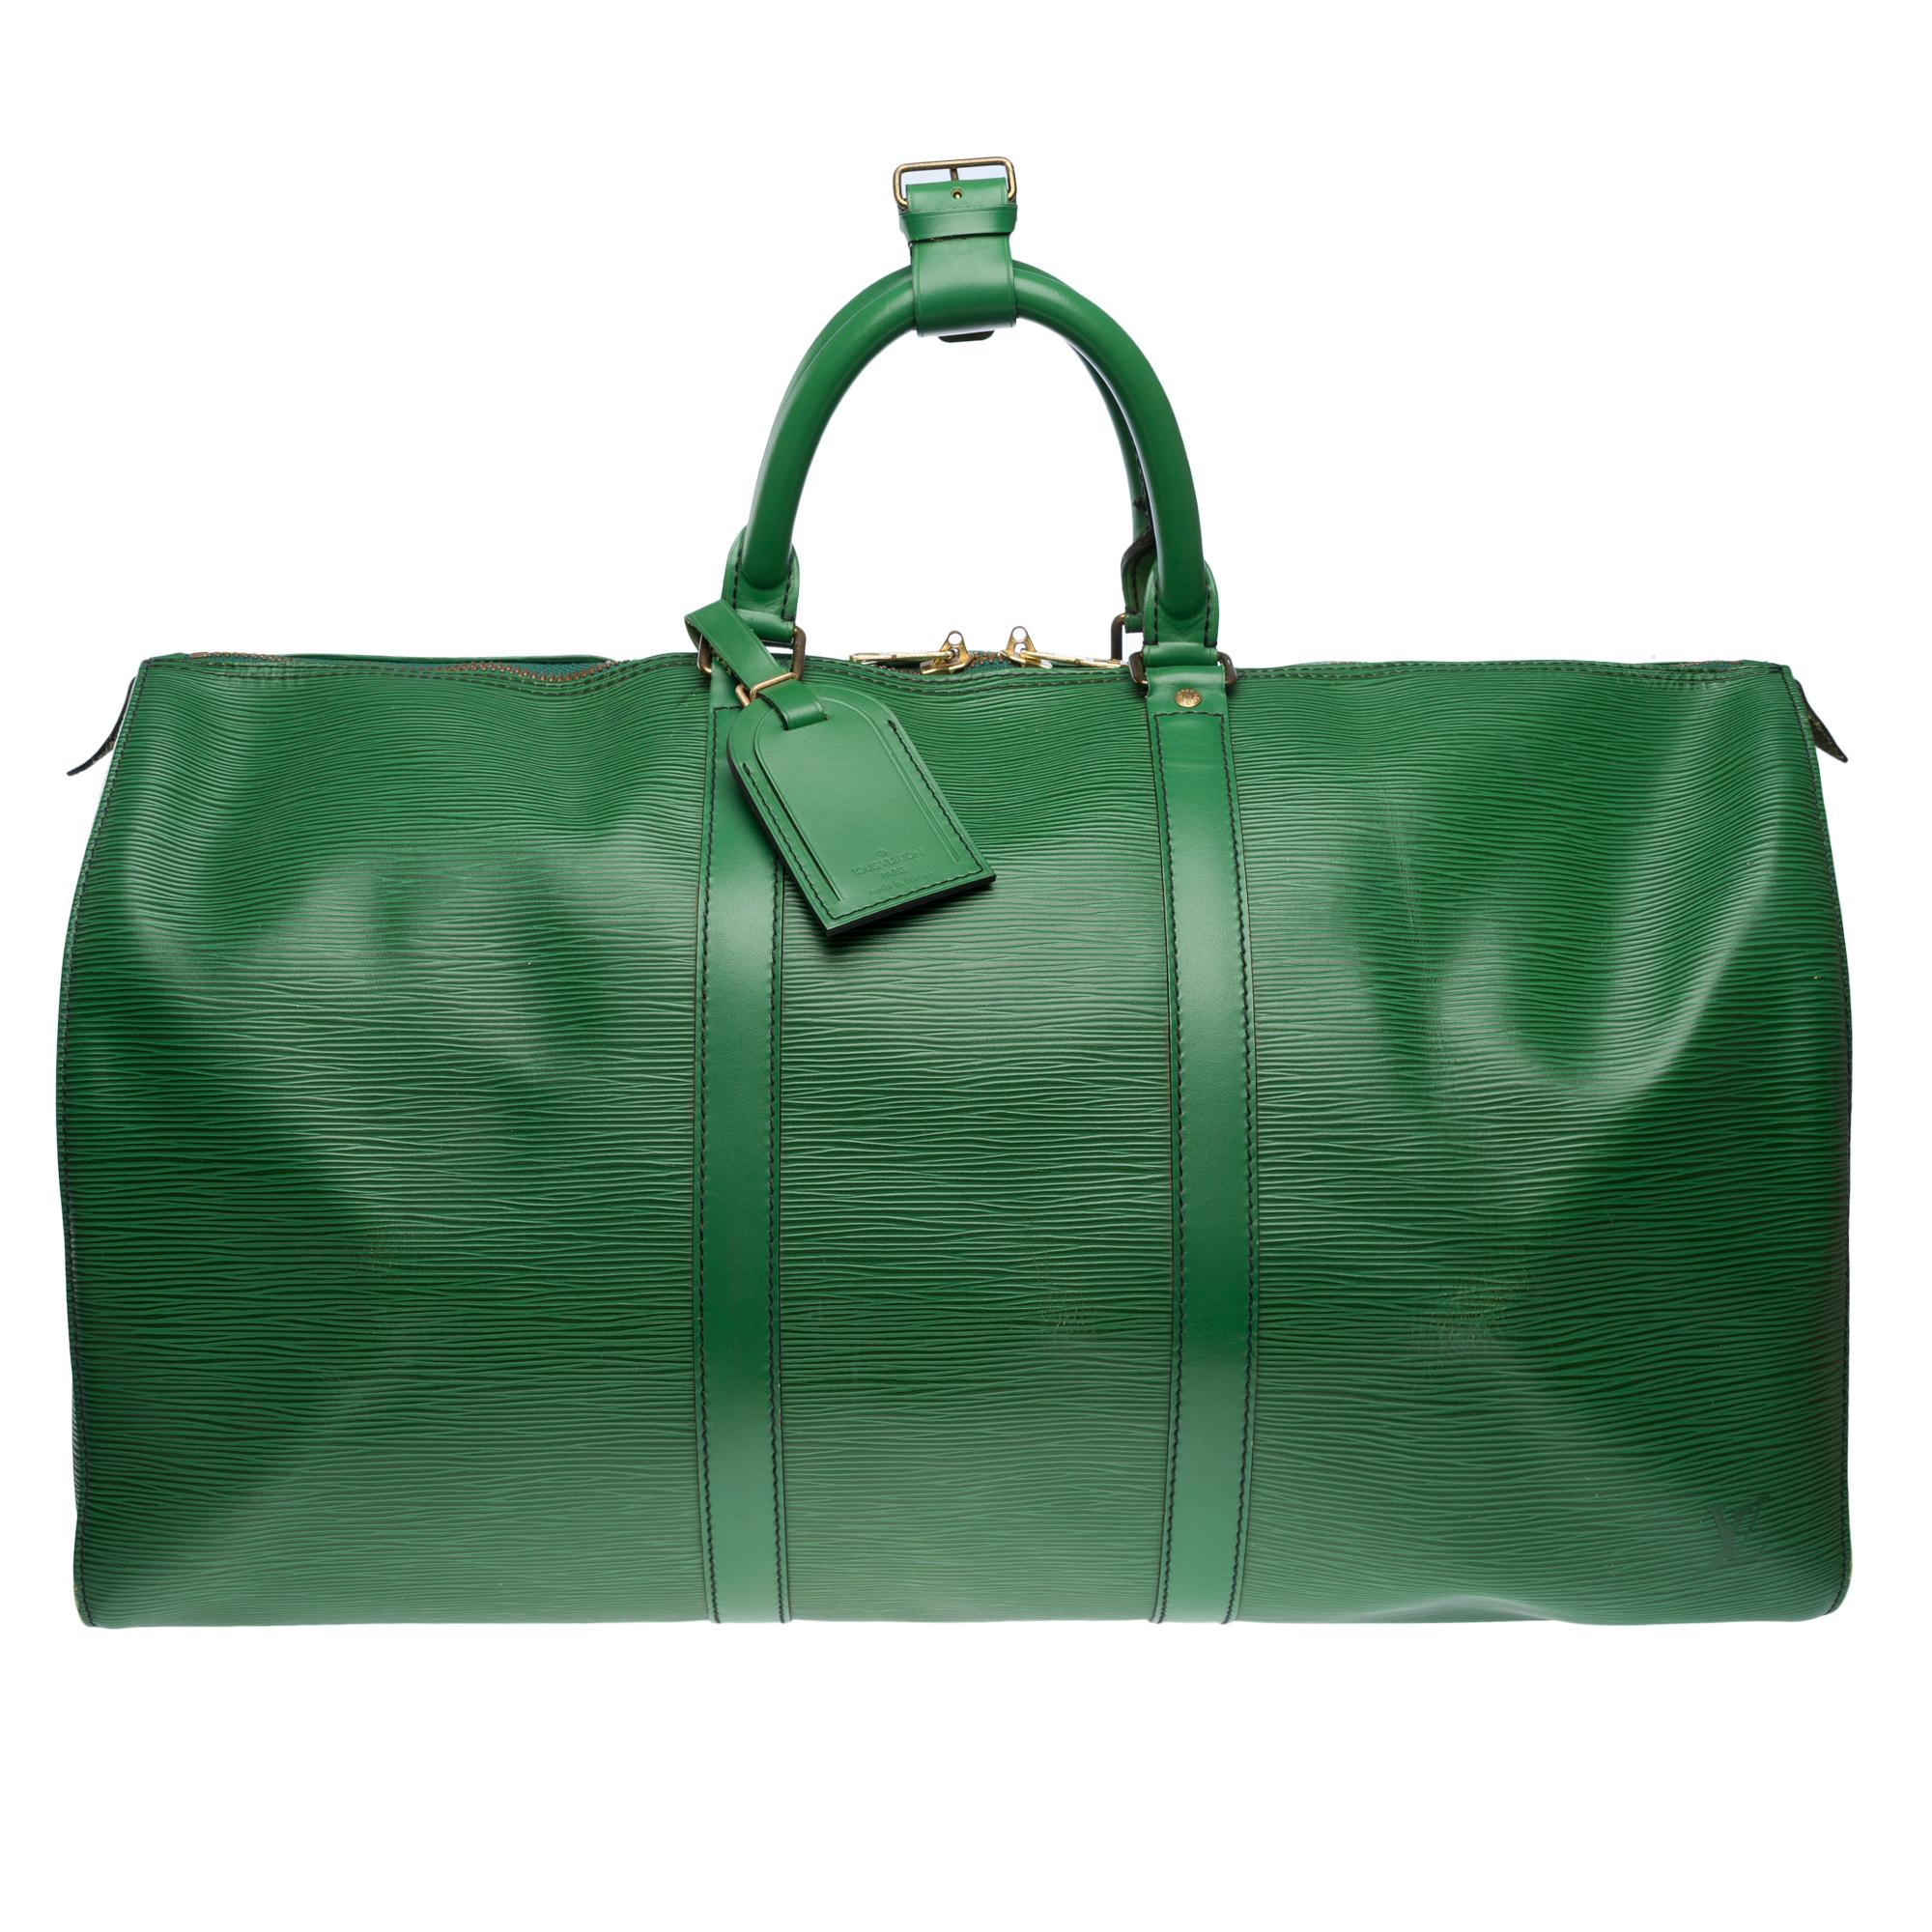 Le très chic sac de voyage Louis Vuitton Keepall 50 cm en cuir épi vert, double fermeture à glissière, double poignée en cuir vert pour le portage à la main

Fermeture à glissière
Une poche latérale plaquée
Doublure intérieure en daim vert
Signature